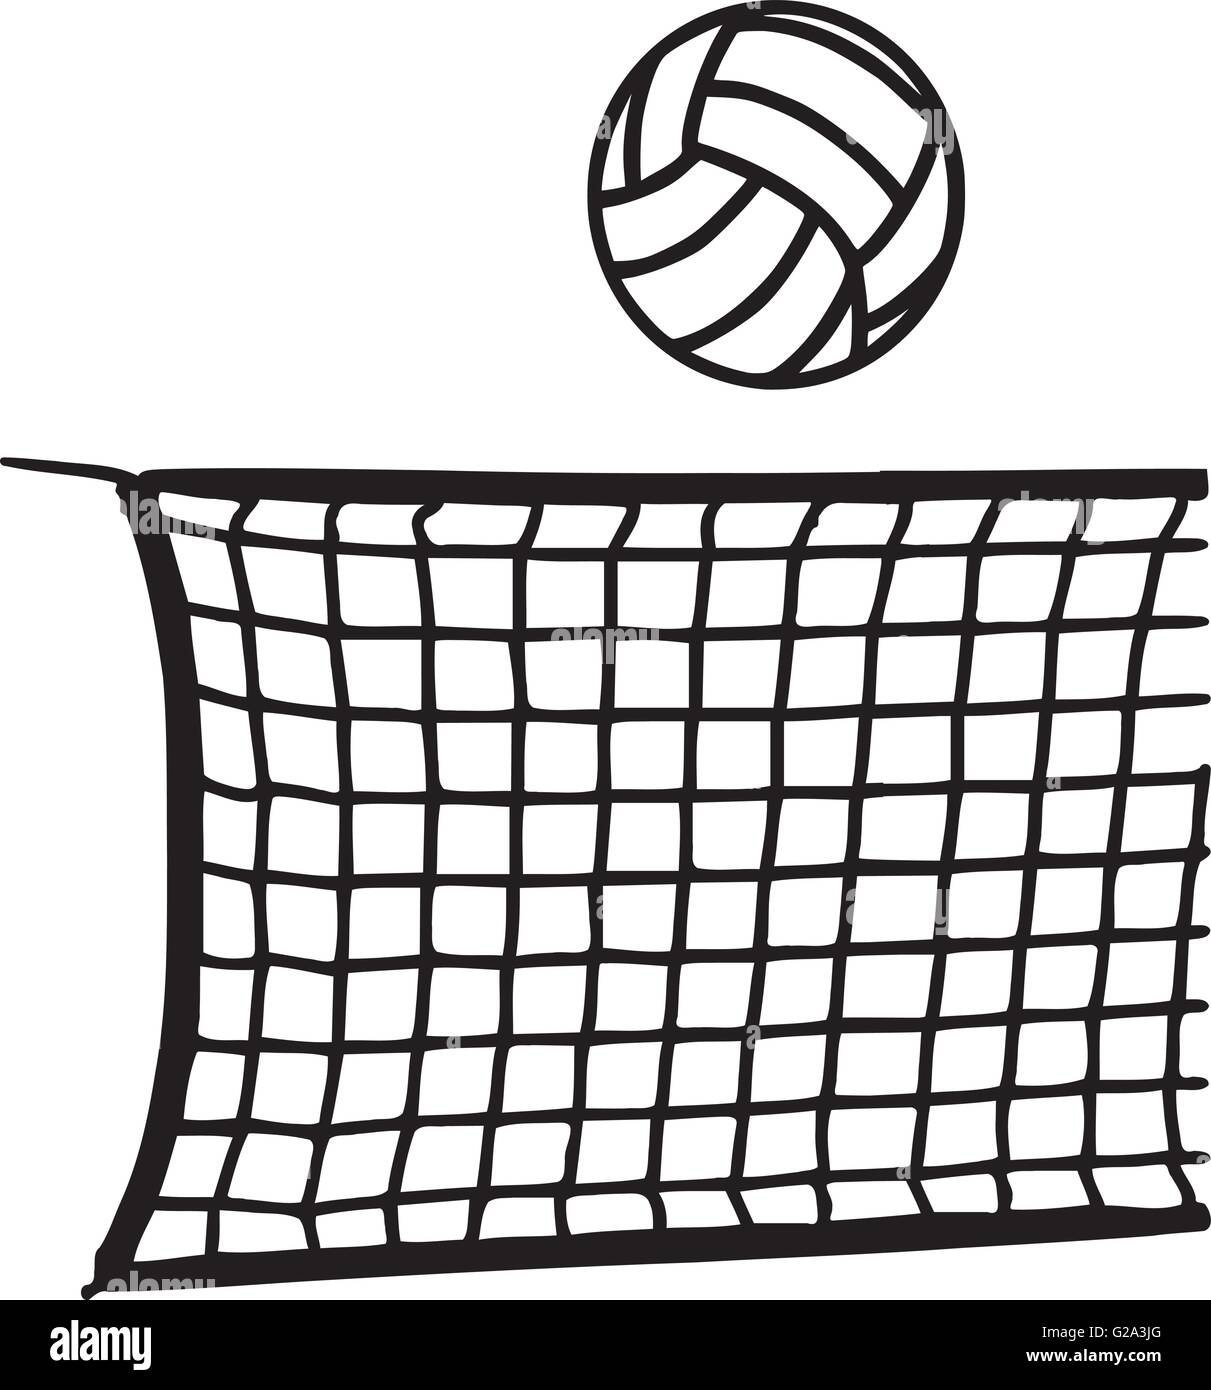 486 imágenes de Volleyball net sketch - Imágenes, fotos y vectores de stock  | Shutterstock